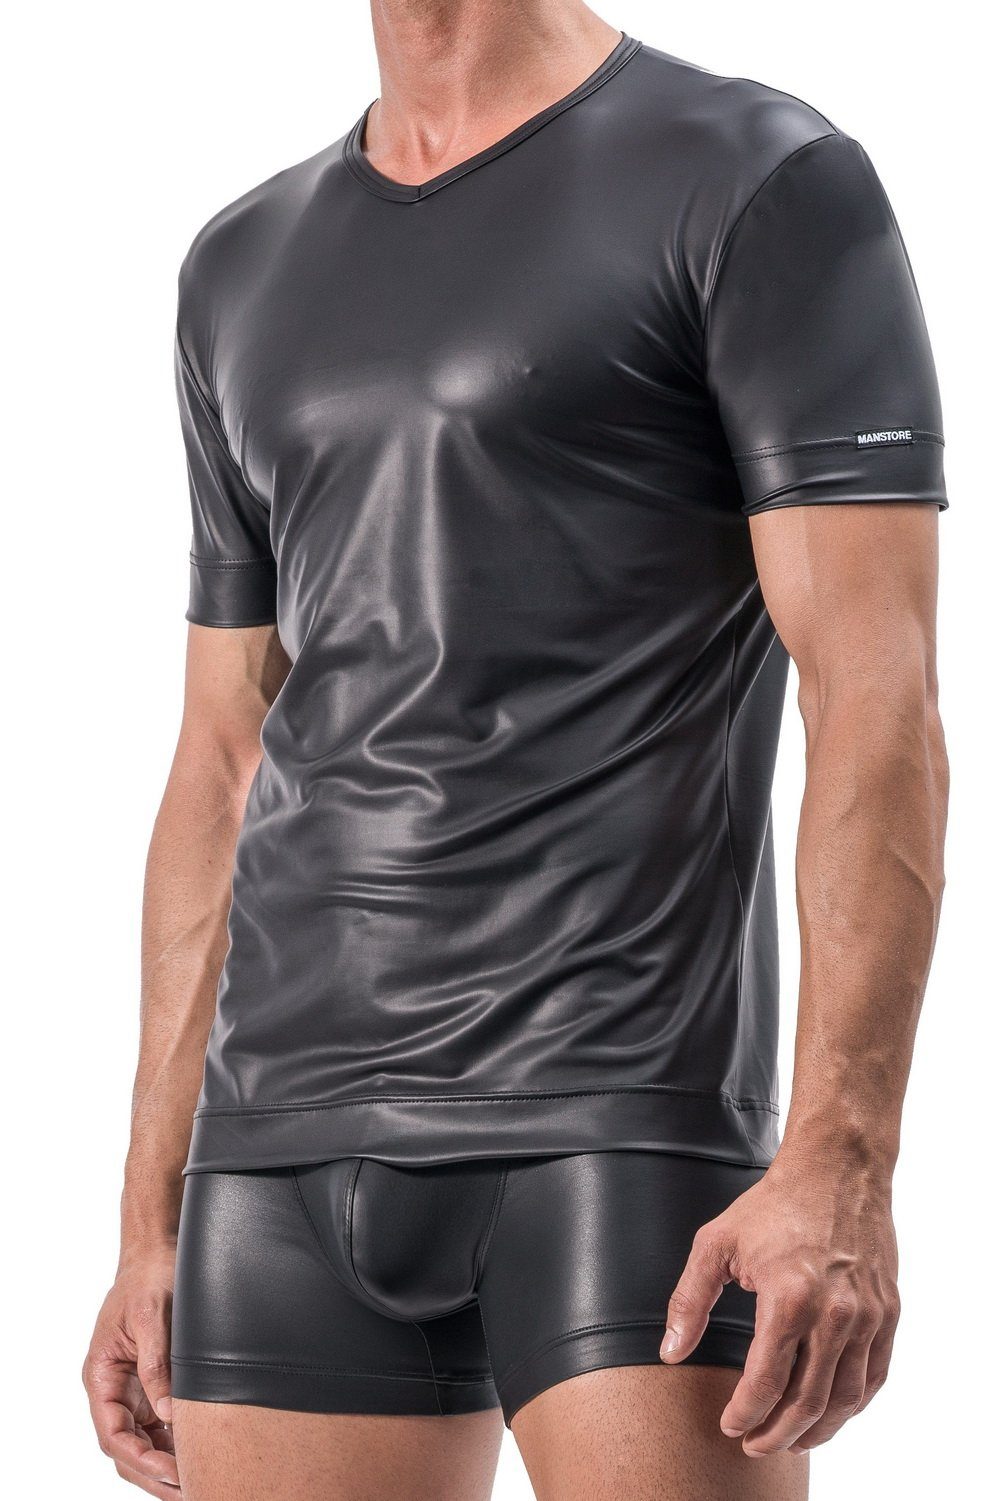 MANSTORE V-Shirt M510 V-Ausschnitt Shirt Clubwear mit Latexfeeling atmungsaktiv XL